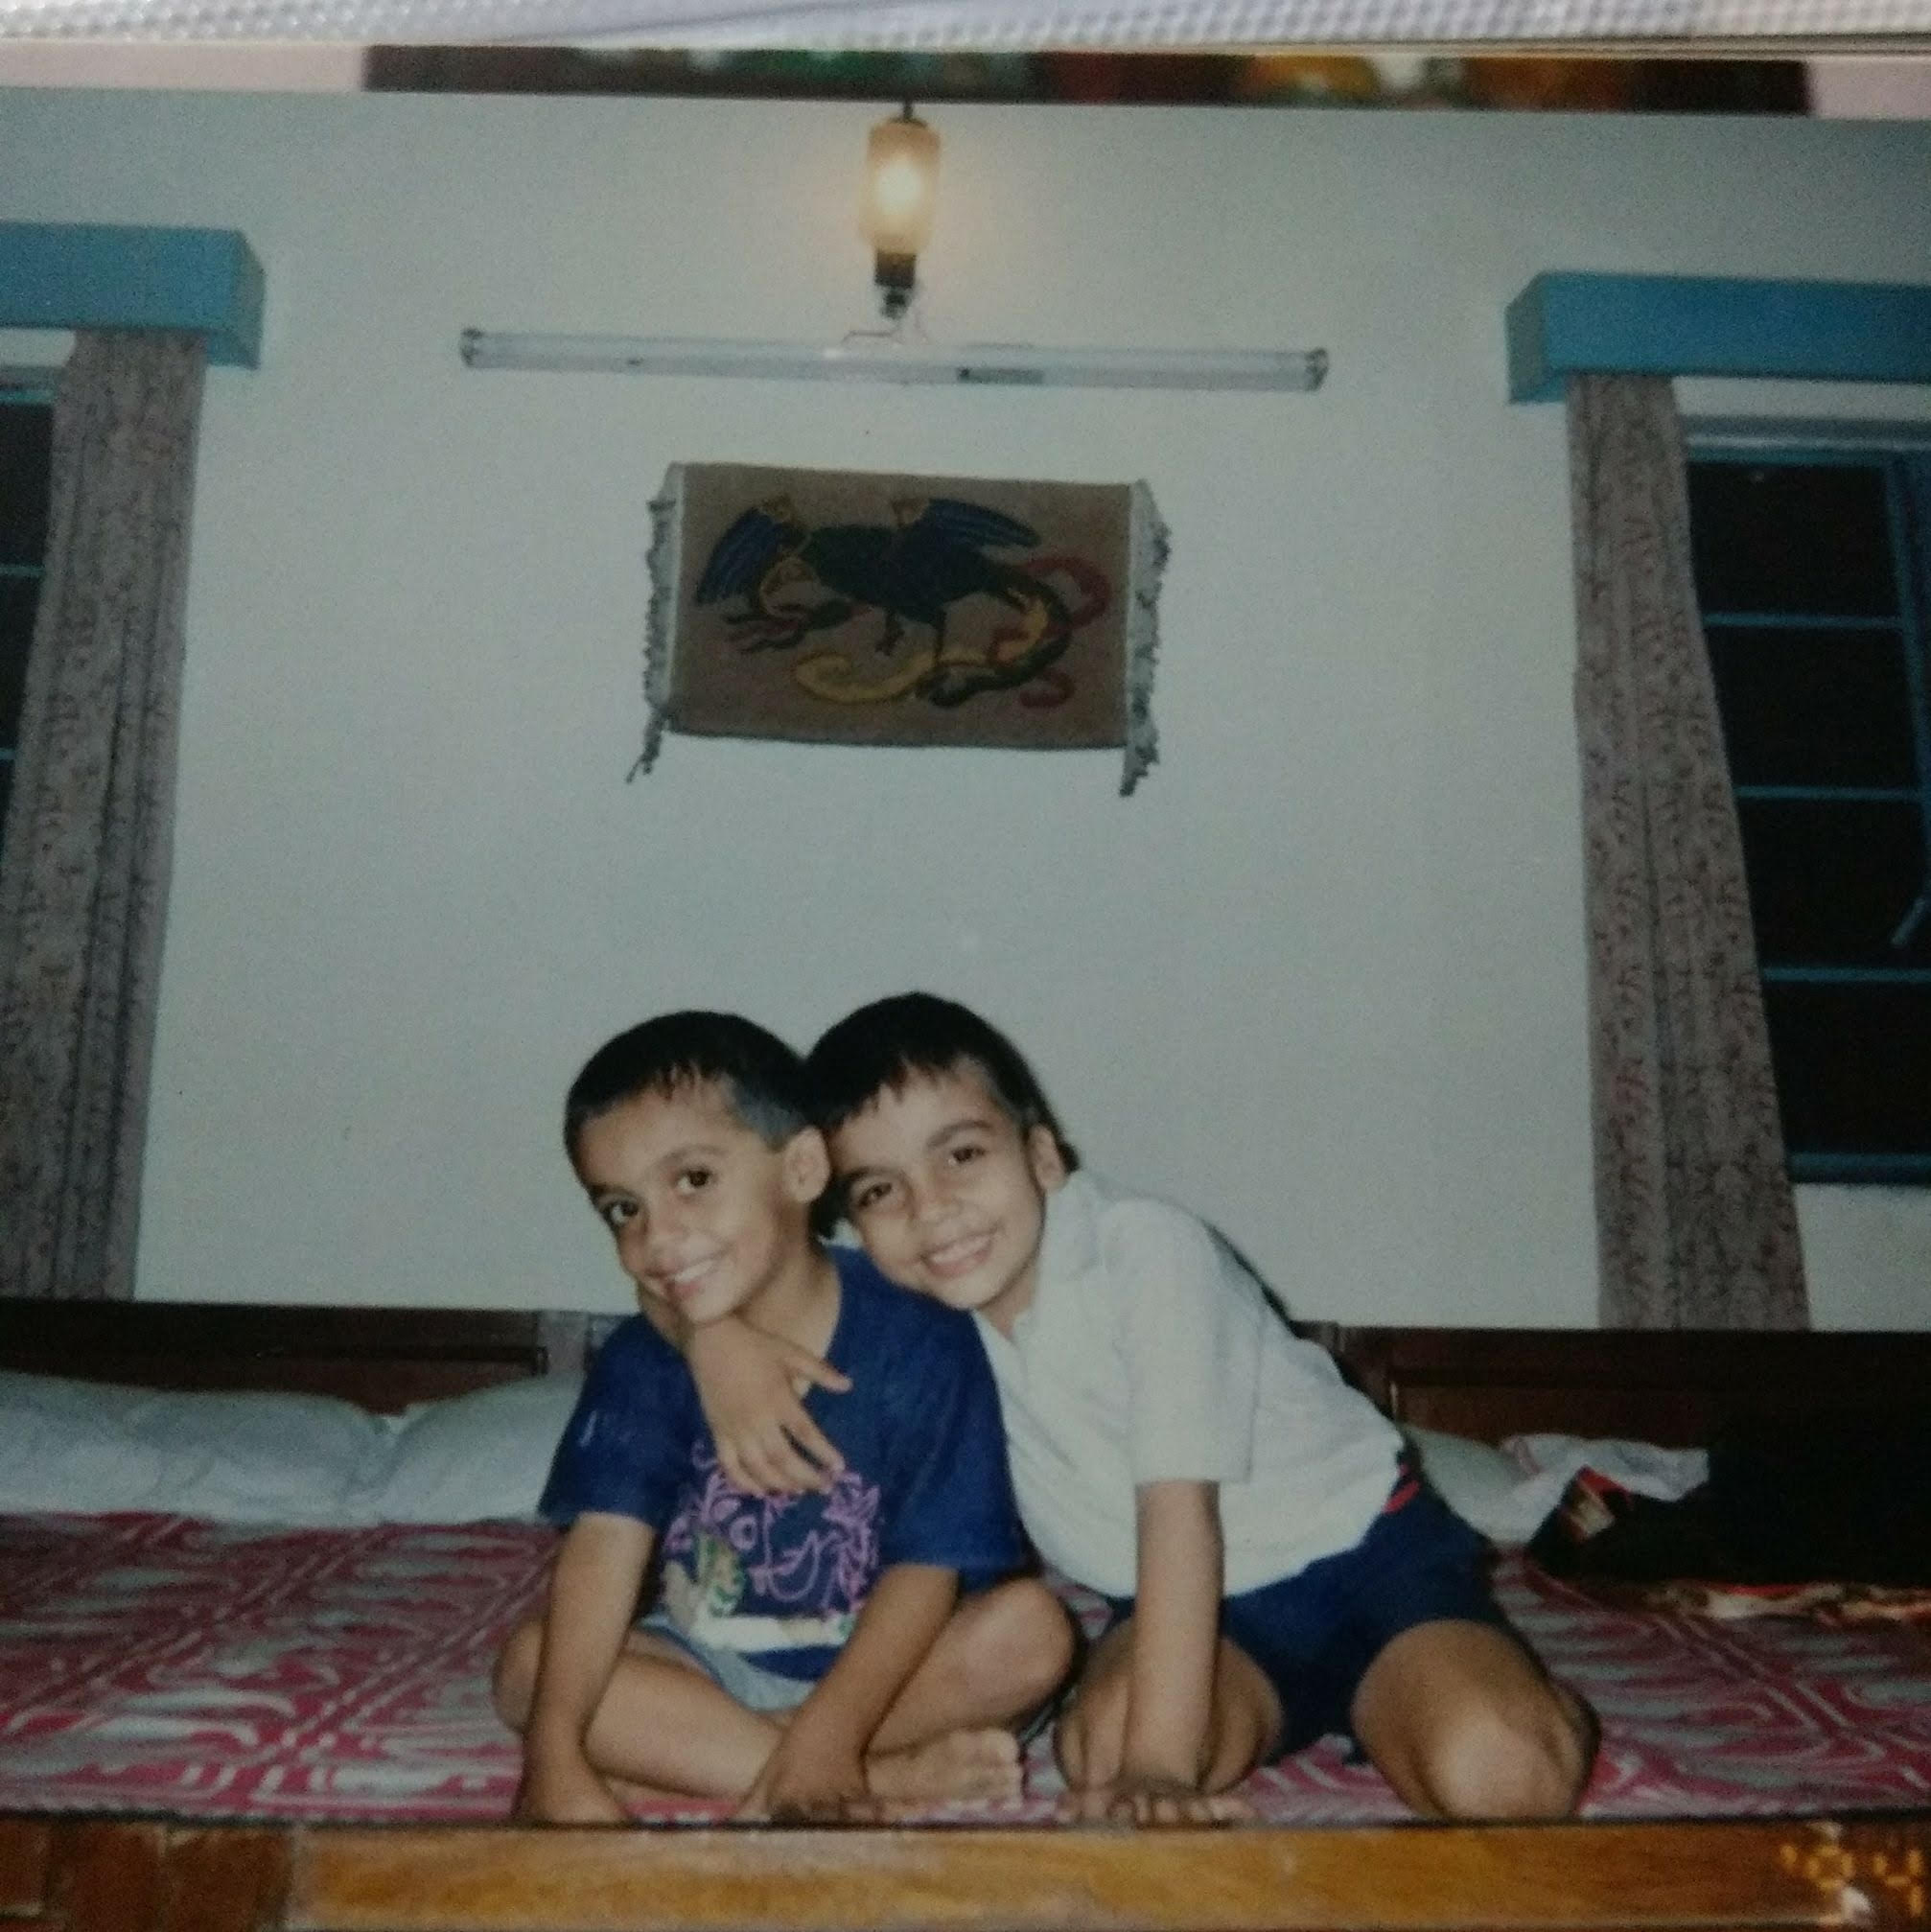 बचपन में आतिश माथुर अपने भाई के साथ